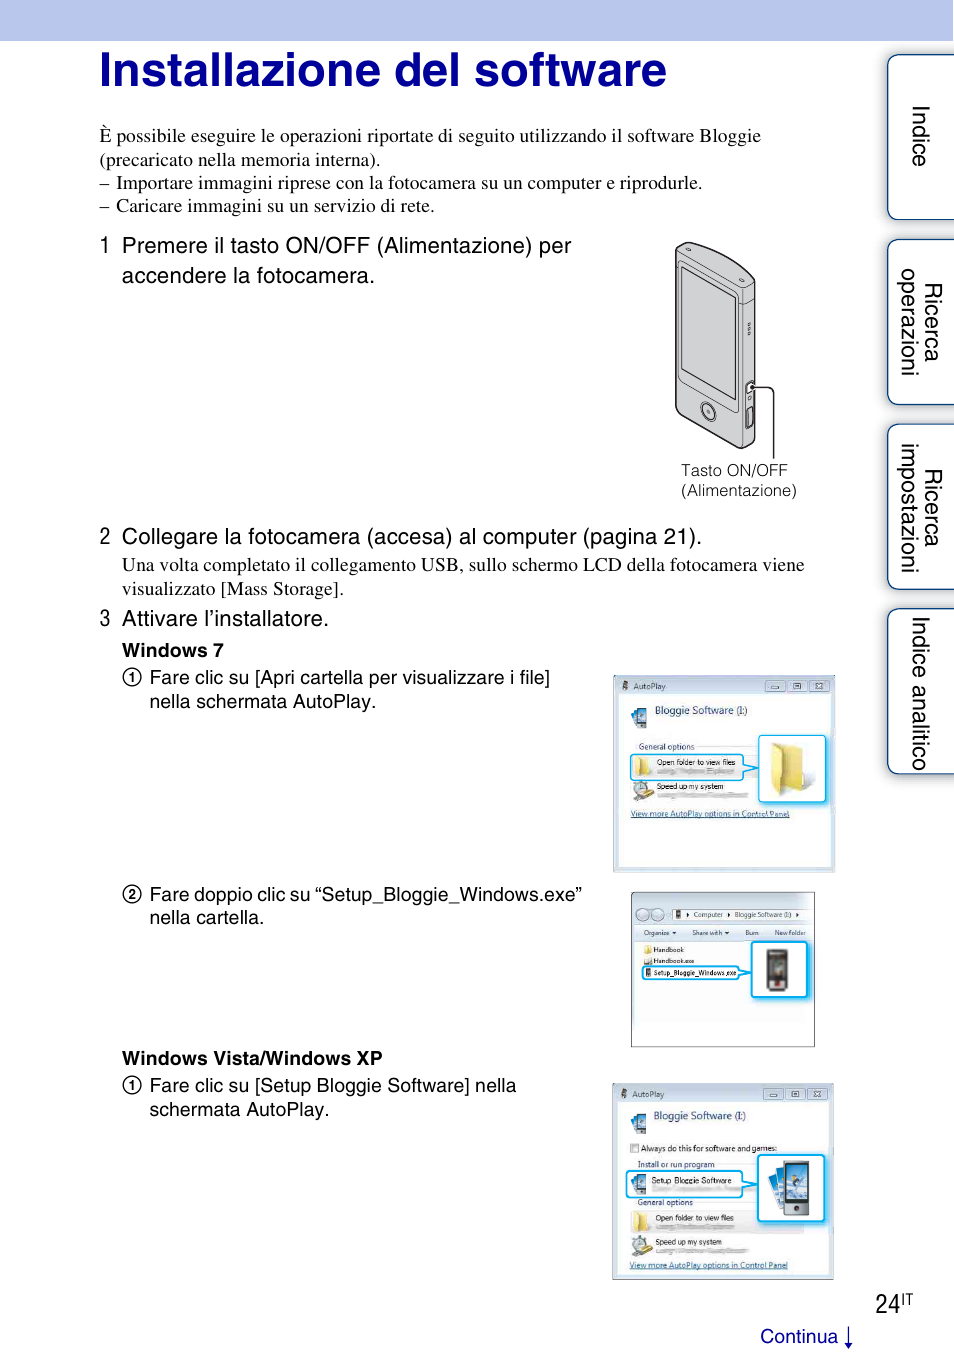 Installazione del software | Sony bloggie MHS-TS10 Manuale d'uso | Pagina 24 / 73